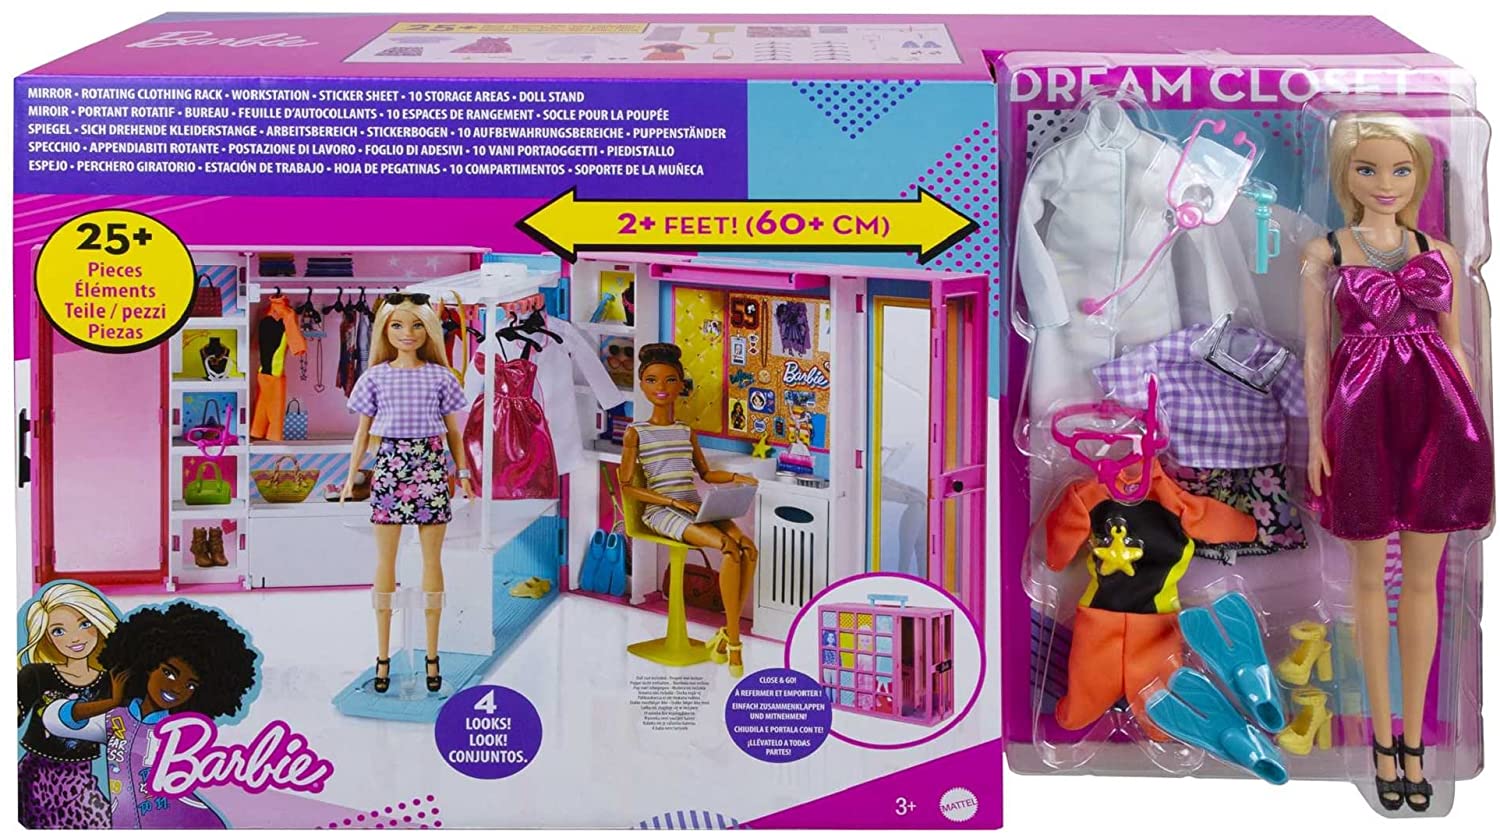 L'armadio dei sogni con Bambola Bionda